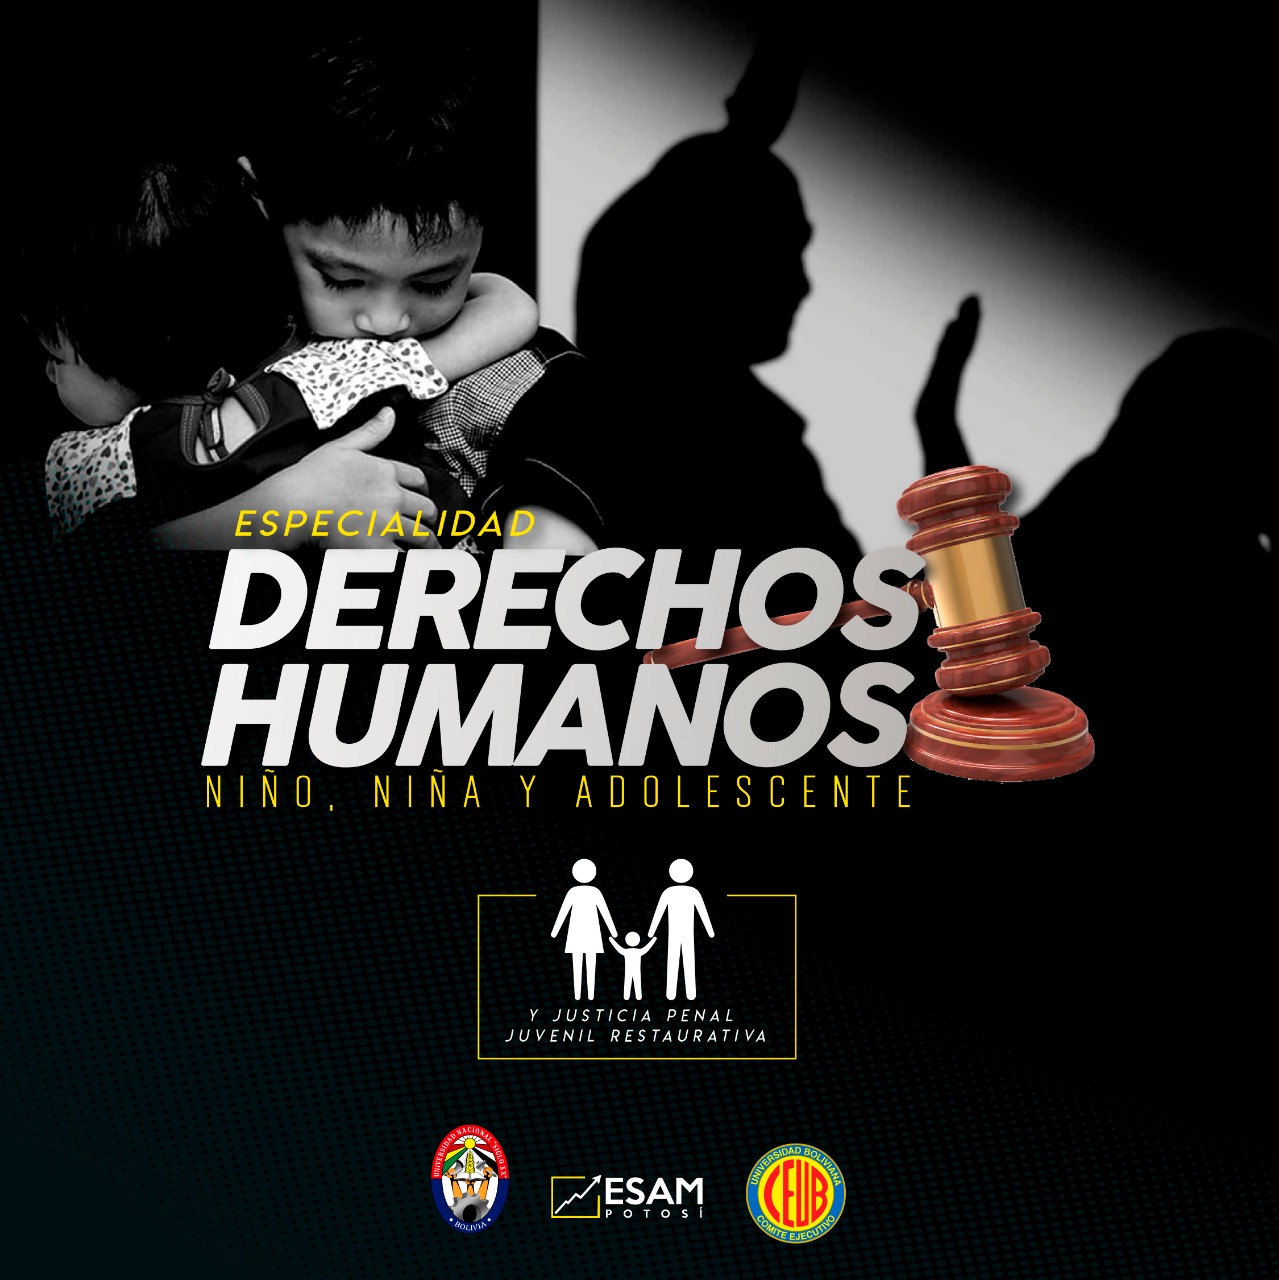 Especialidad Derechos Humanos Niño, Niña, Adolescente Y Justicia Penal Juvenil Restaurativa